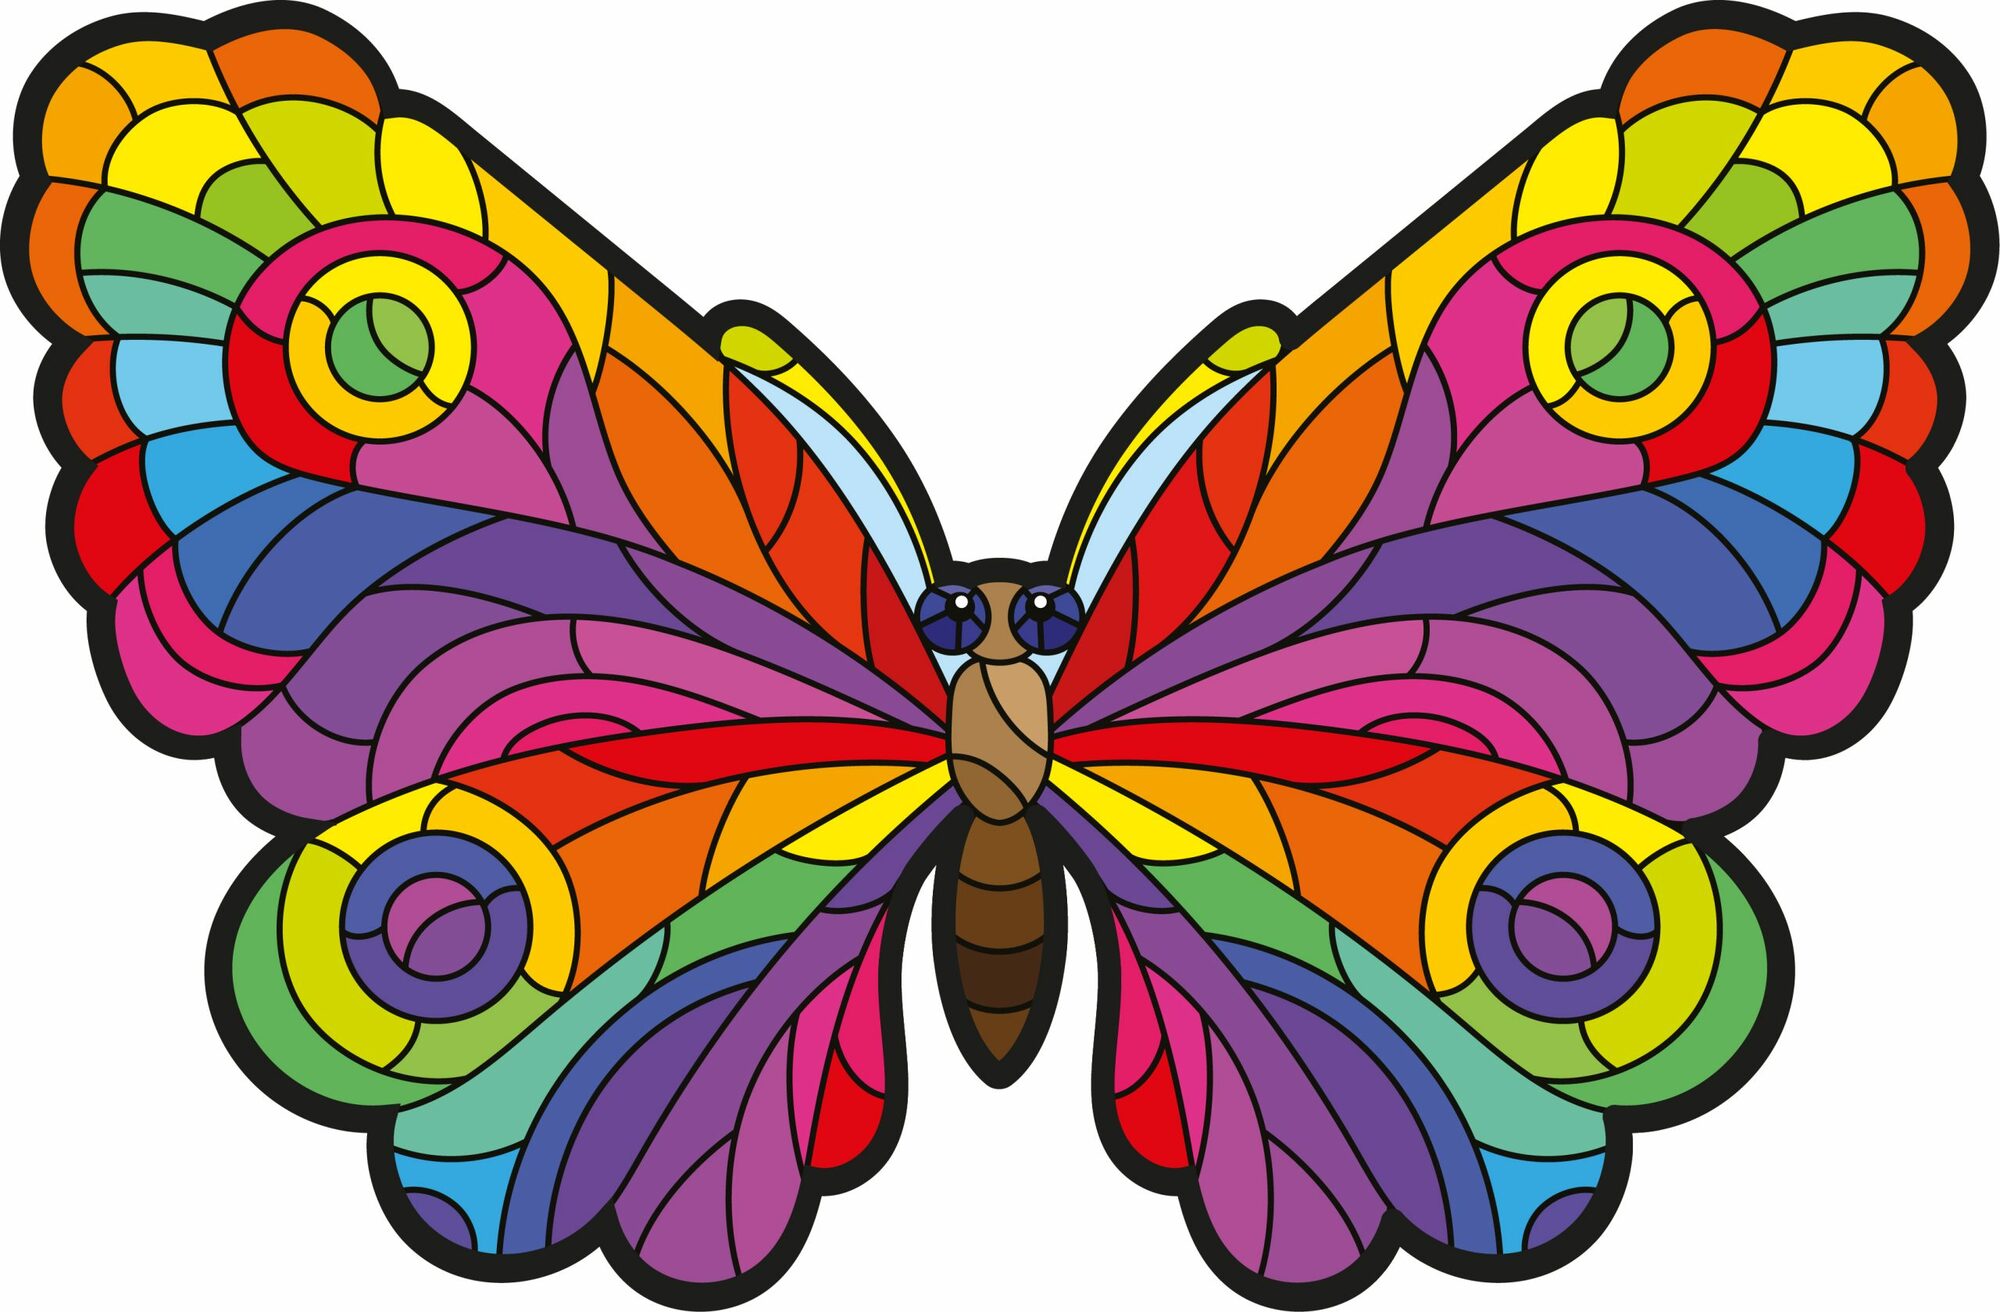 Dřevěné puzzle set Motýl